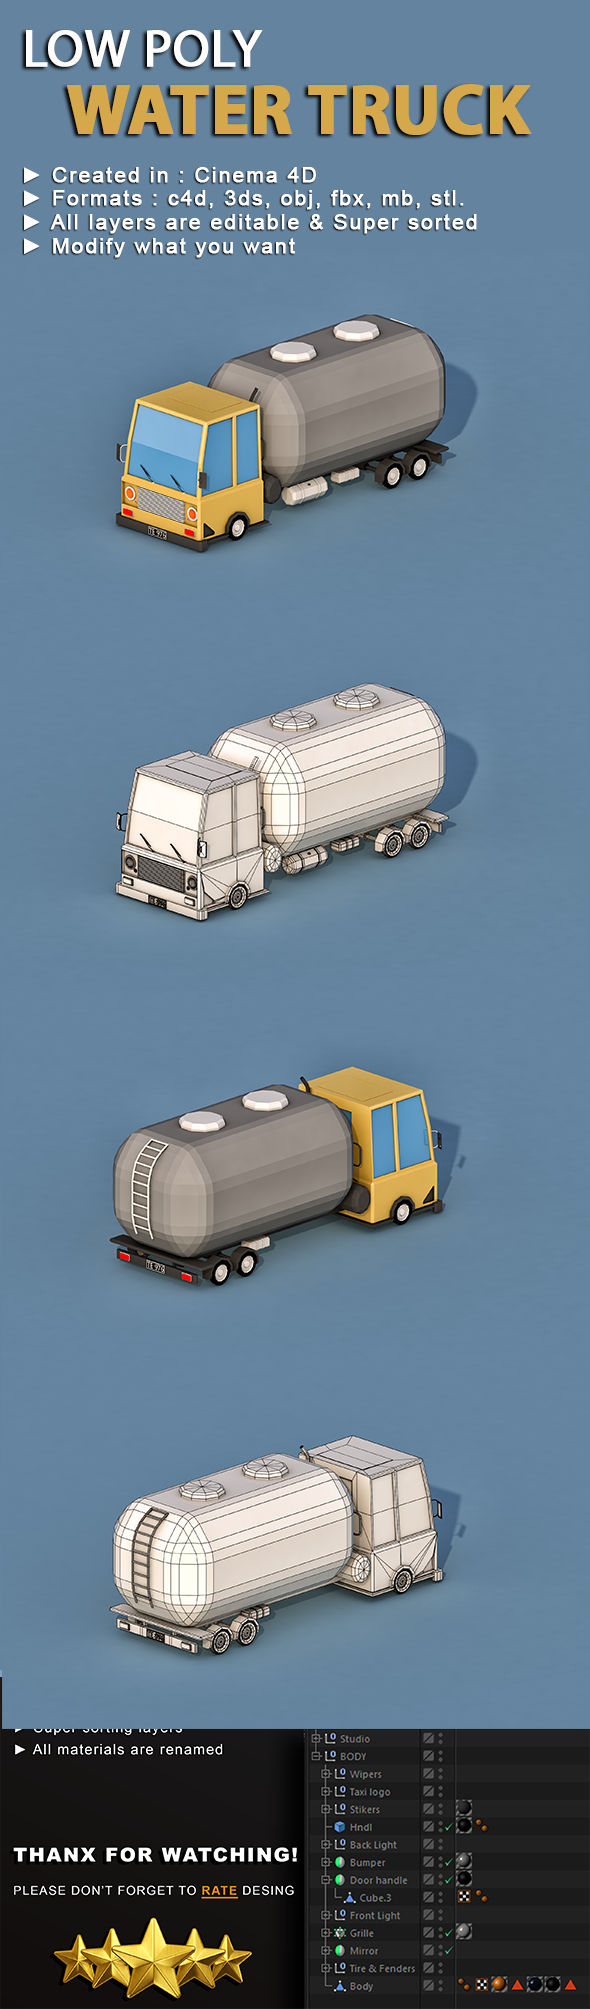 Cartoon Water Truck - 3Docean 22935950